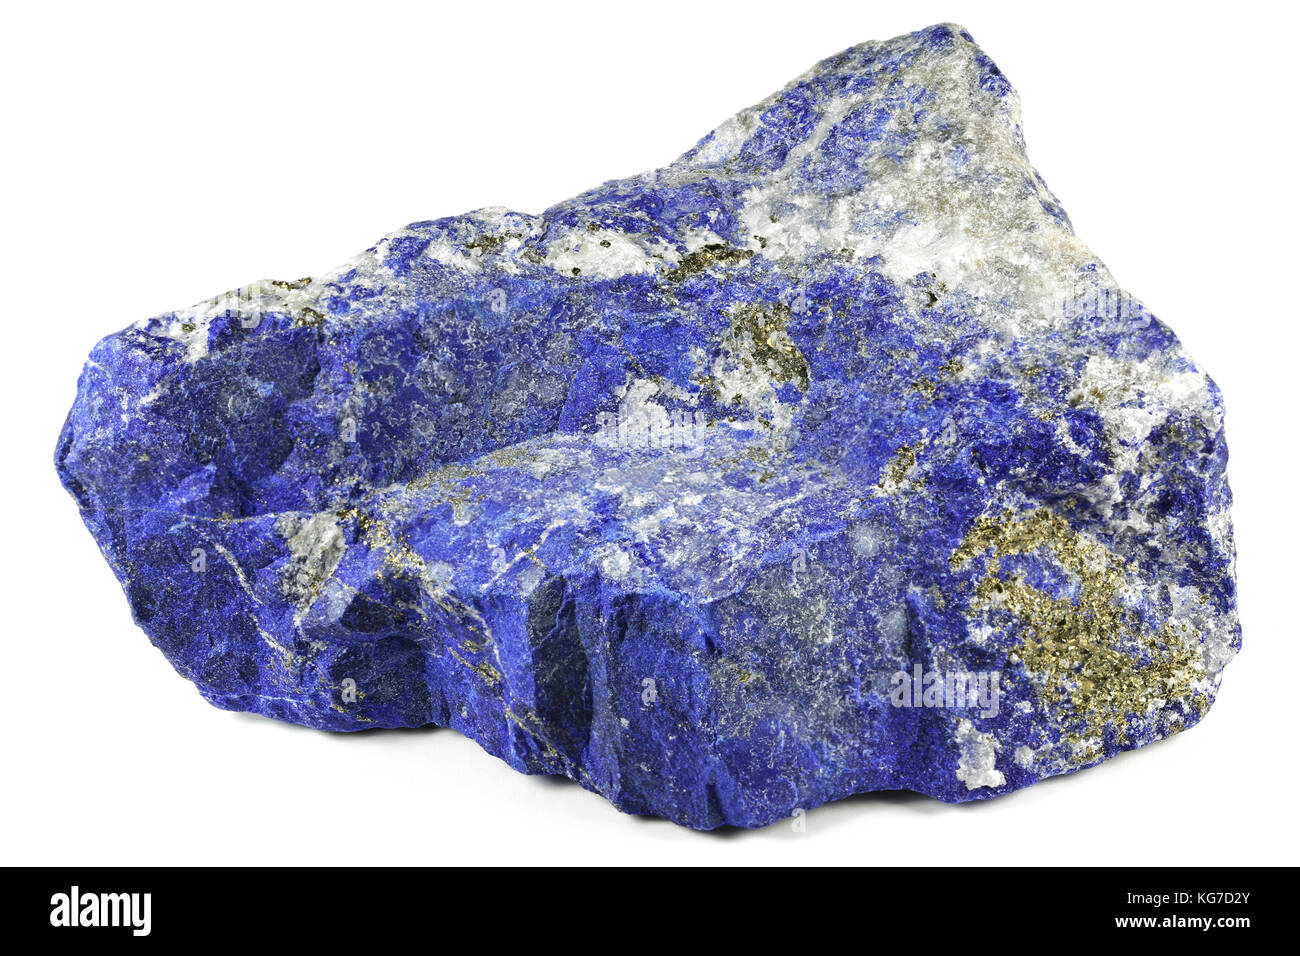 Le lapis-lazuli d'afghanistan isolé sur fond blanc Banque D'Images